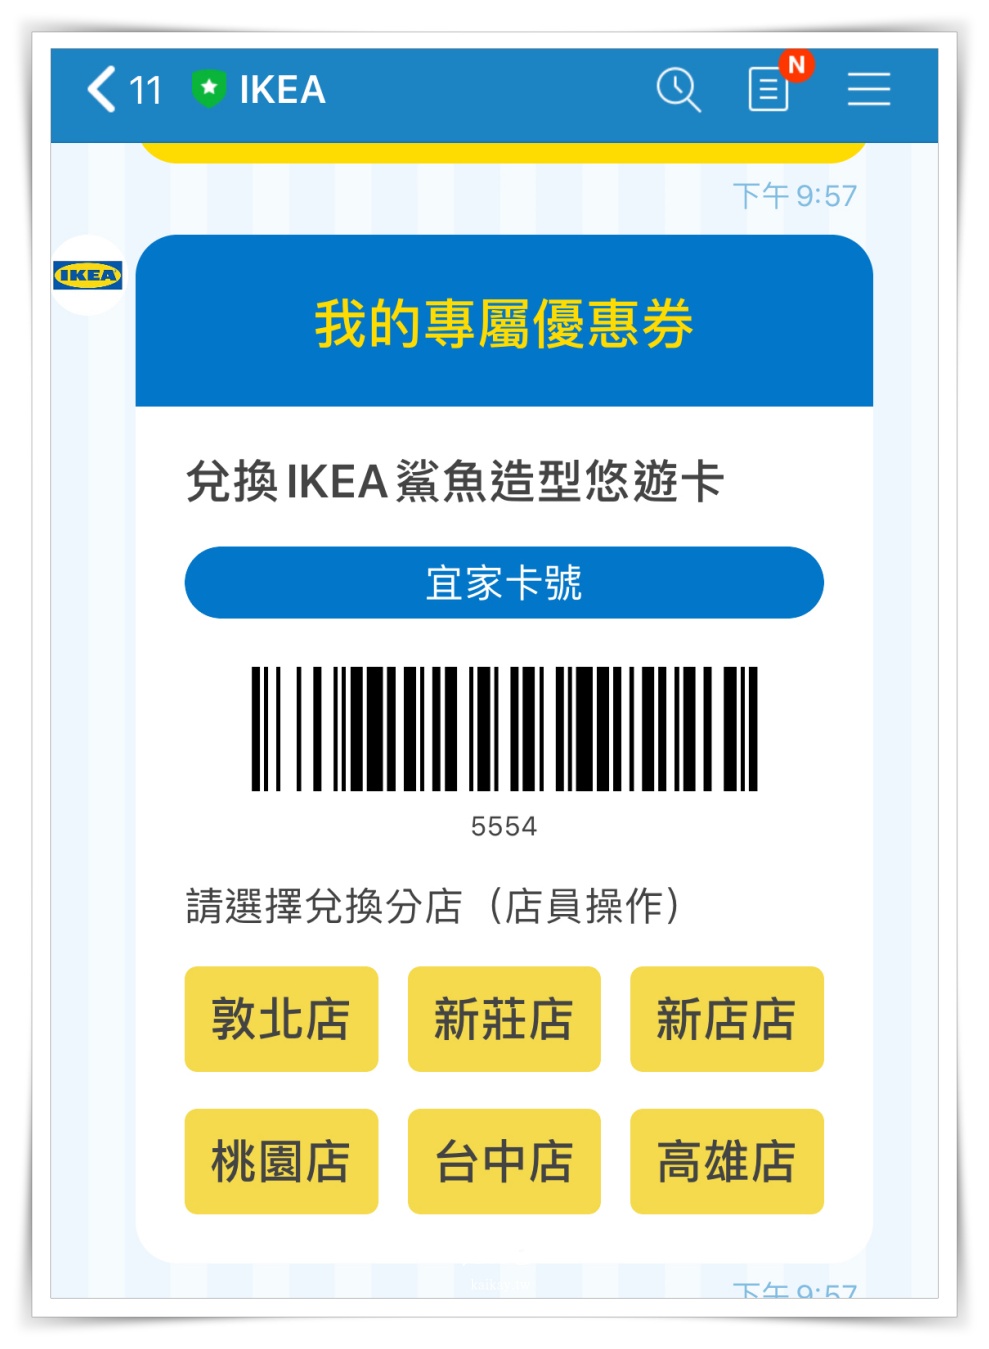 ☆【宜家】IKEA鯊魚悠遊卡重出江湖！9/16~10/11 消費抽鯊魚悠遊卡再送鯊魚口罩